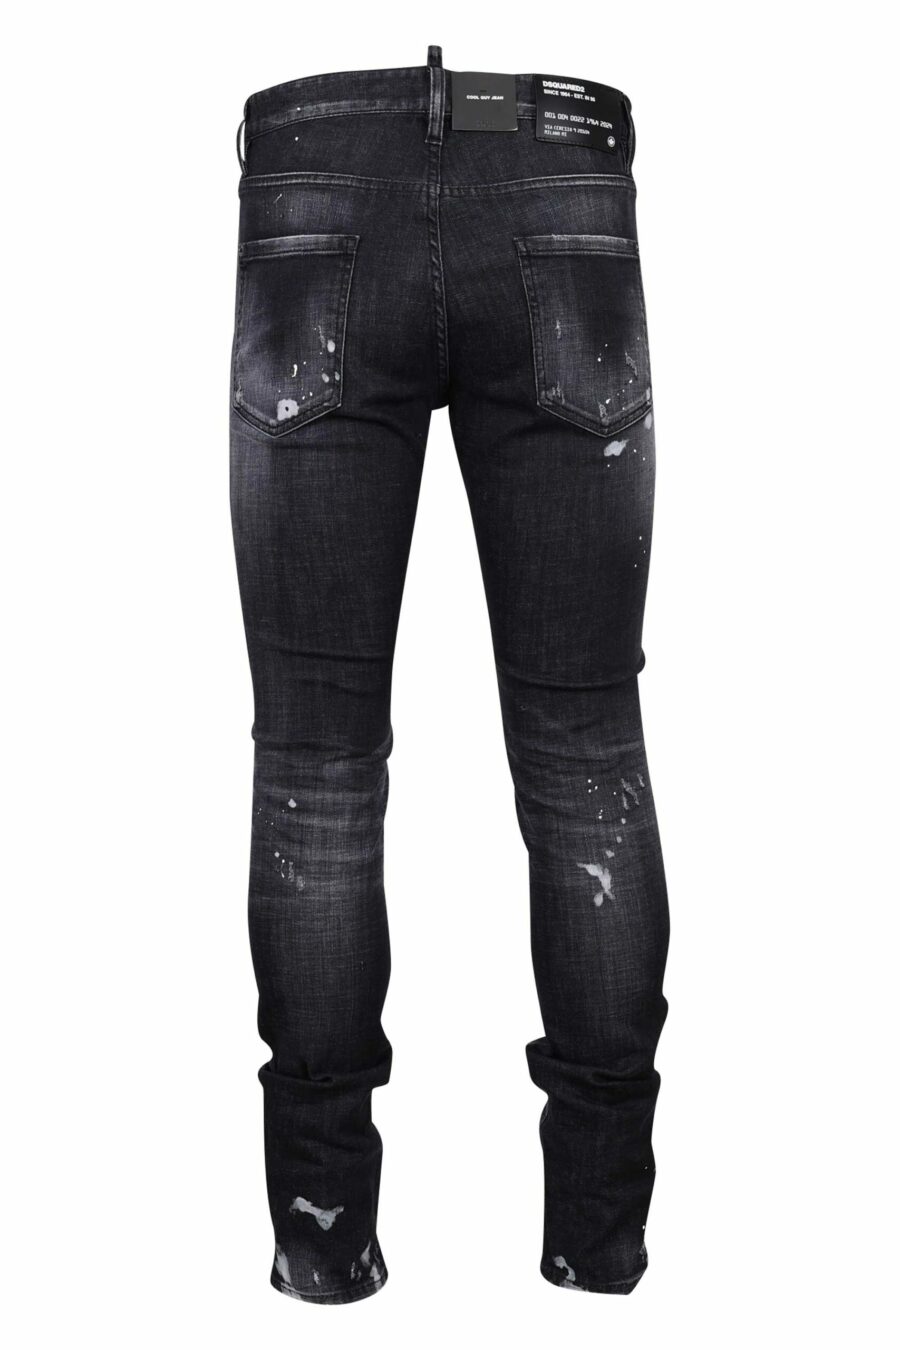 Pantalón vaquero negro "cool guy jean" con rotos y desgastado - 8054148300753 2 scaled